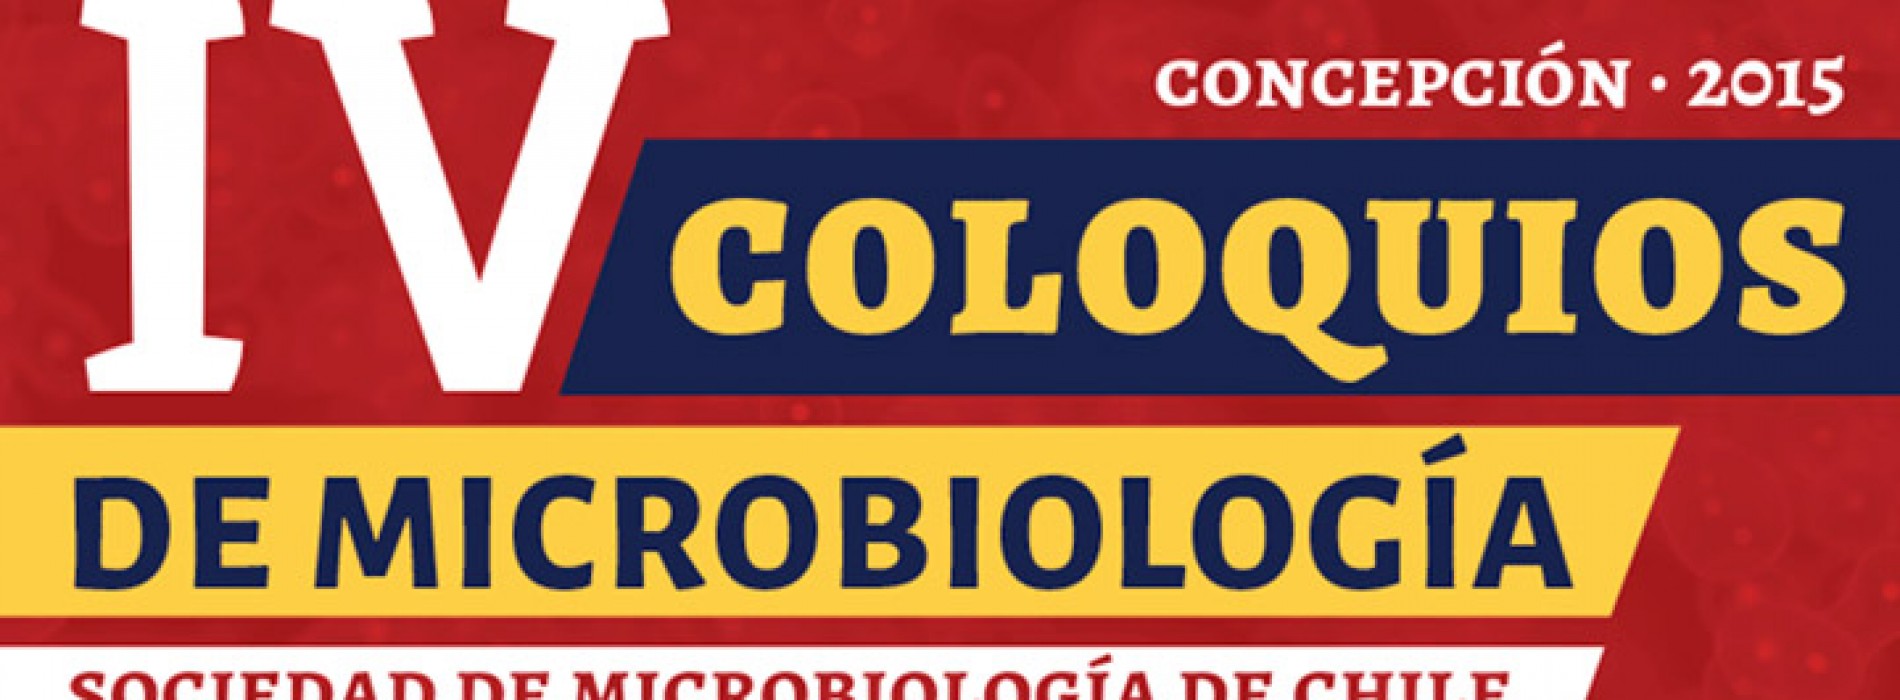 IV Coloquios de Microbiología.- Concepción 2015 – Sociedad de Microbiología de Chile